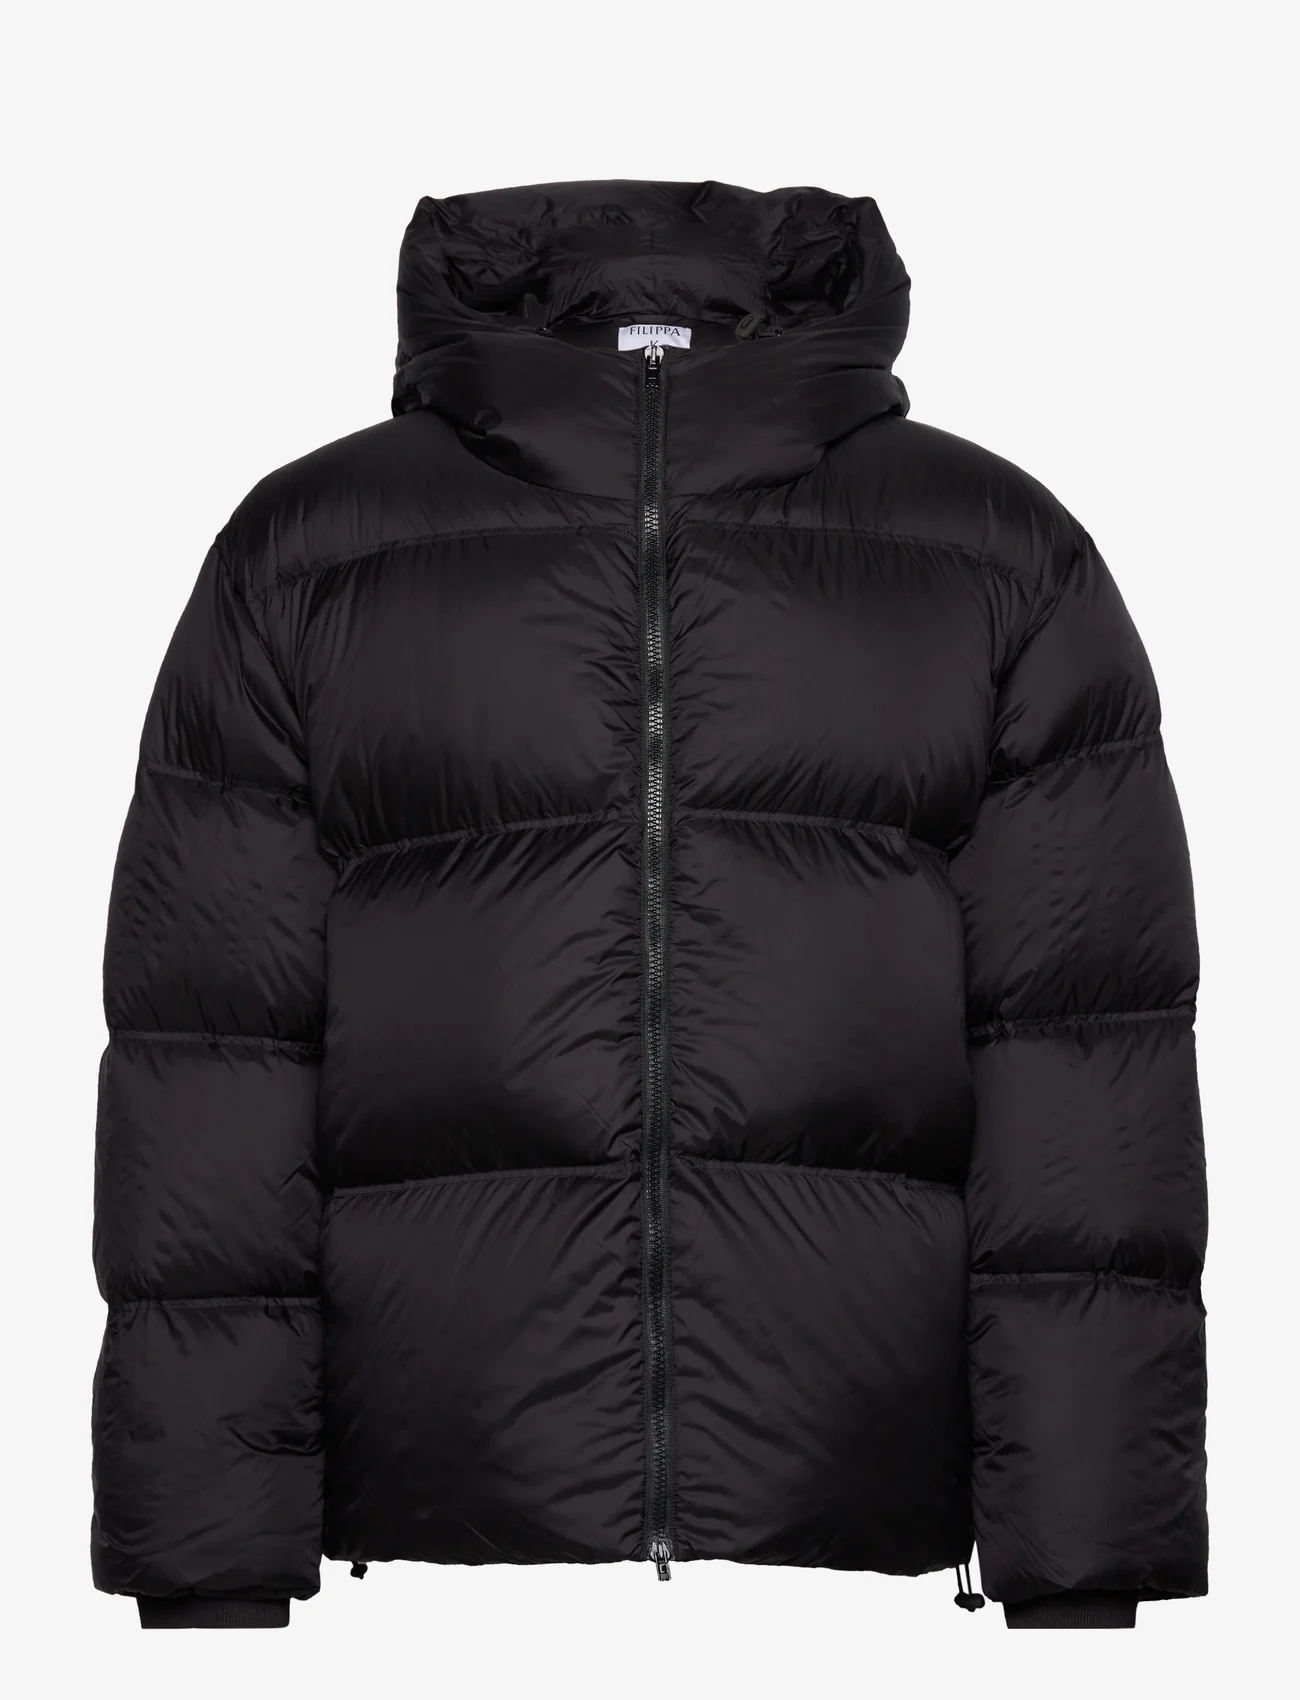 Filippa K - Hooded Puffer Jacket - winterjacken - black - 0